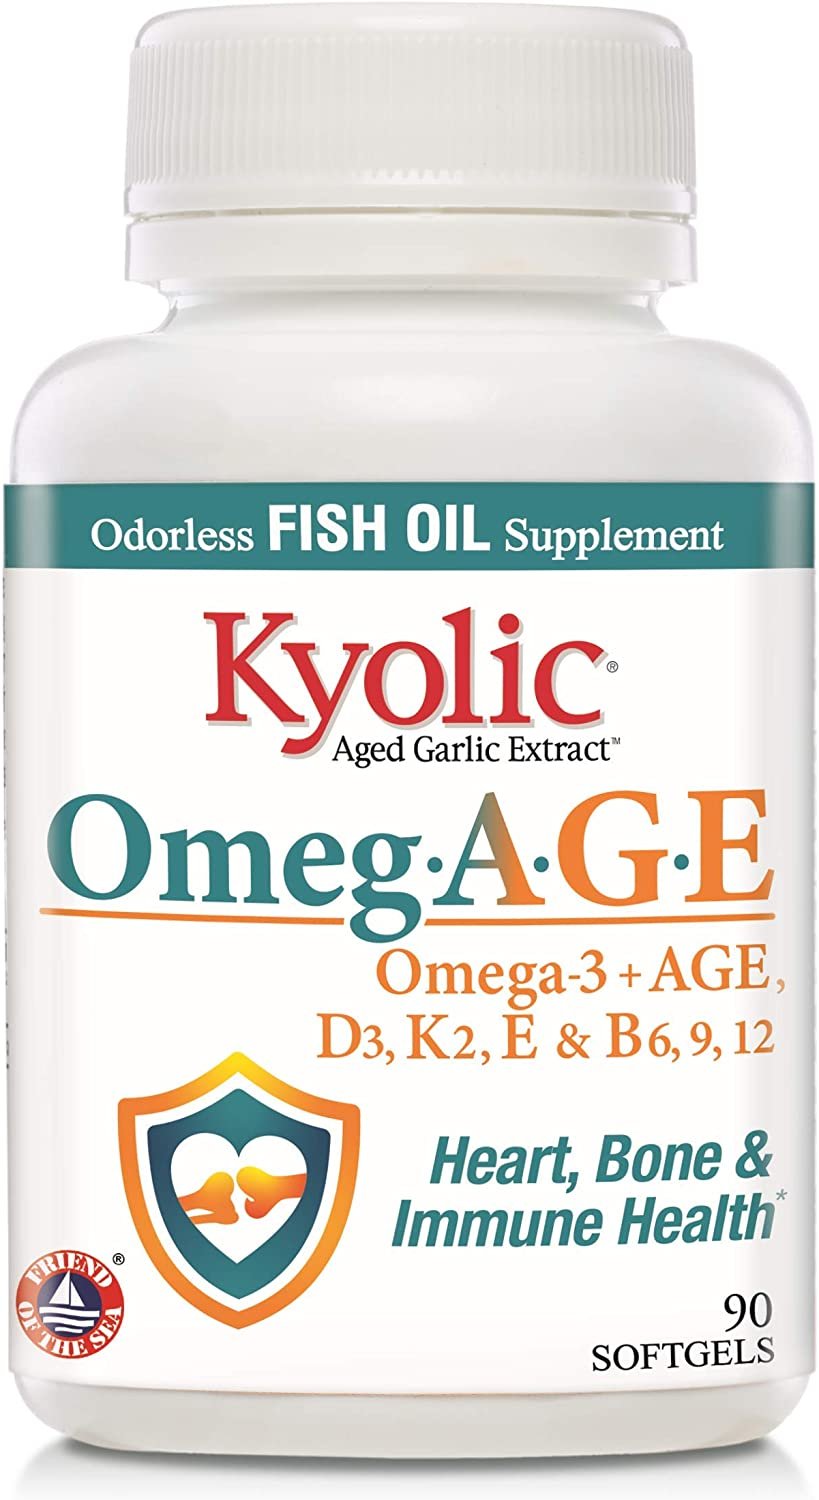 Kyolic Omeg-Age, Heart, Bone & Immune Health, 90 Count Softgels